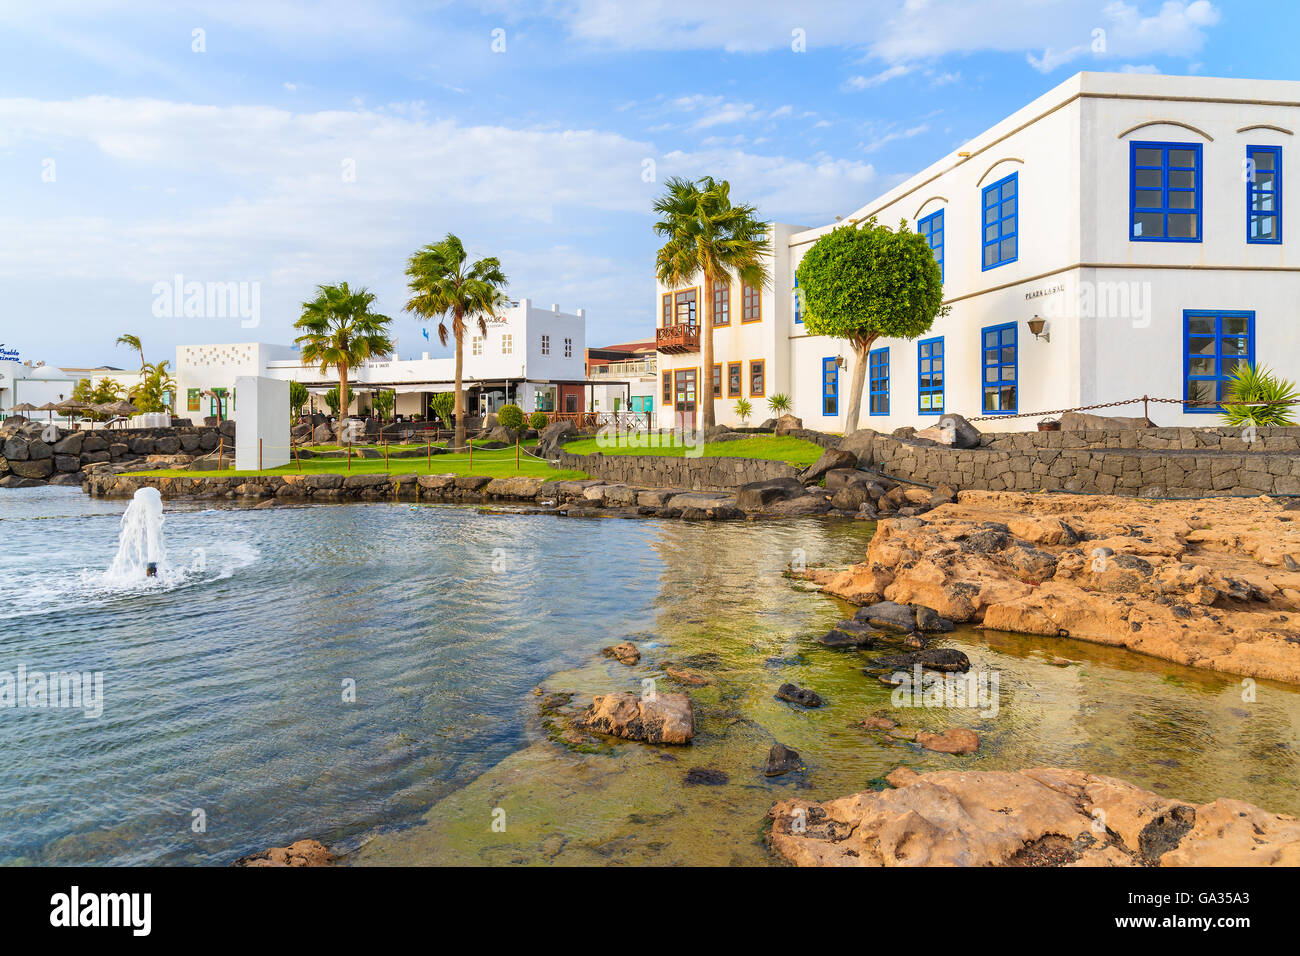 MARINA RUBICON, Insel LANZAROTE - 11. Januar 2015: typisch kanarische Häuser im Rubicon Hafen. Kanarischen Inseln sind beliebte Touristenziel wegen sonnigen tropischen Klima das ganze Jahr. Stockfoto